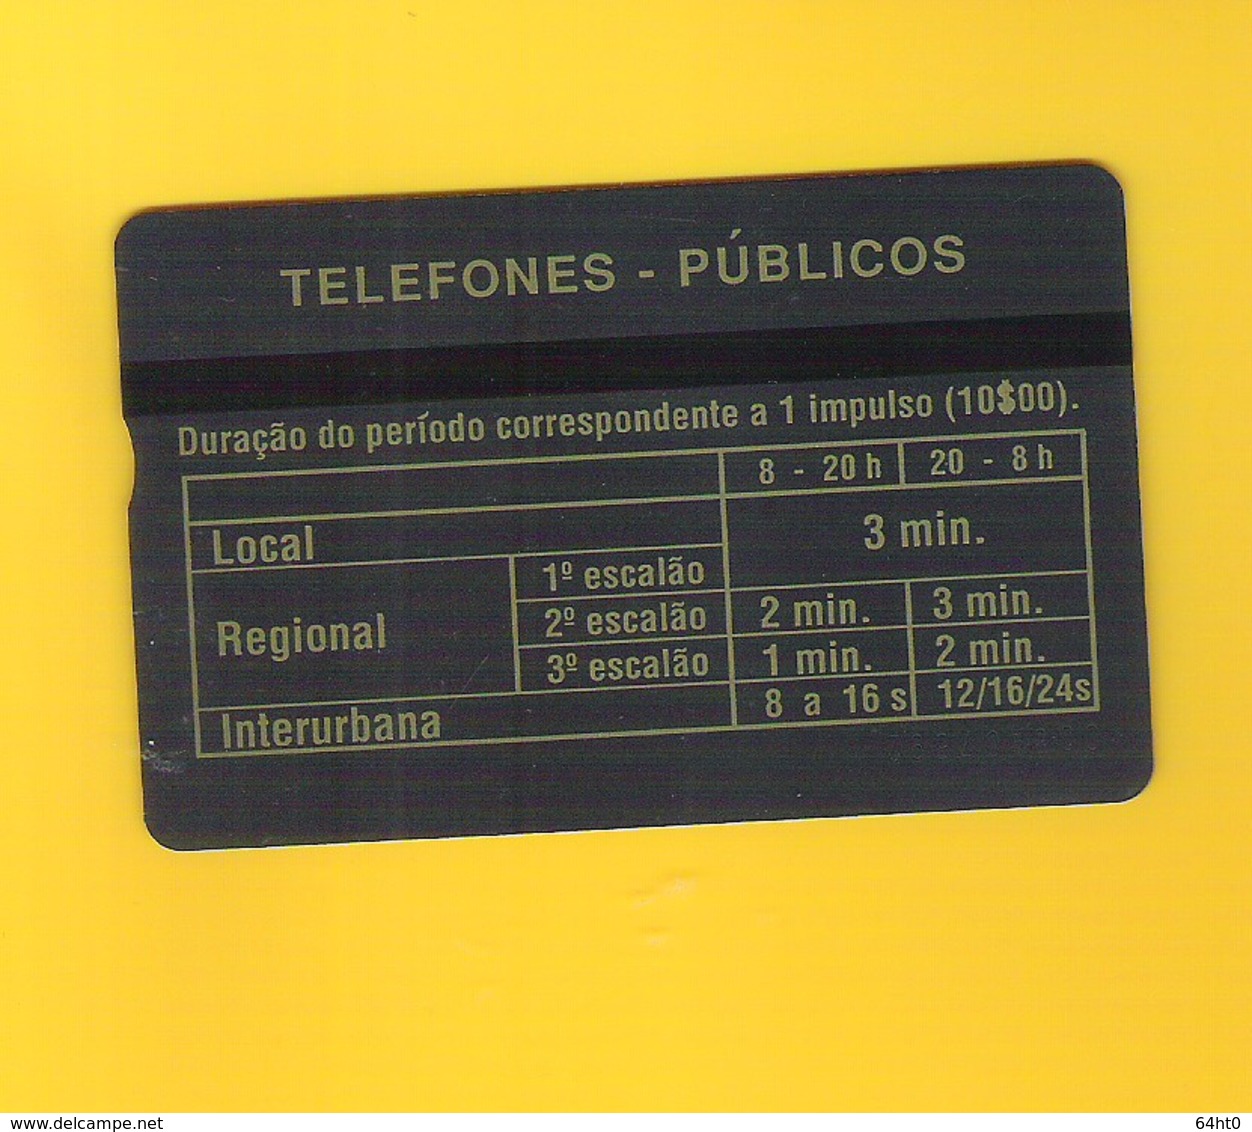 PHONECARD - PORTUGAL "CREDIFONE AZUL/PERIODO" 50U - 008A - LP11 - NOT USED - Portugal